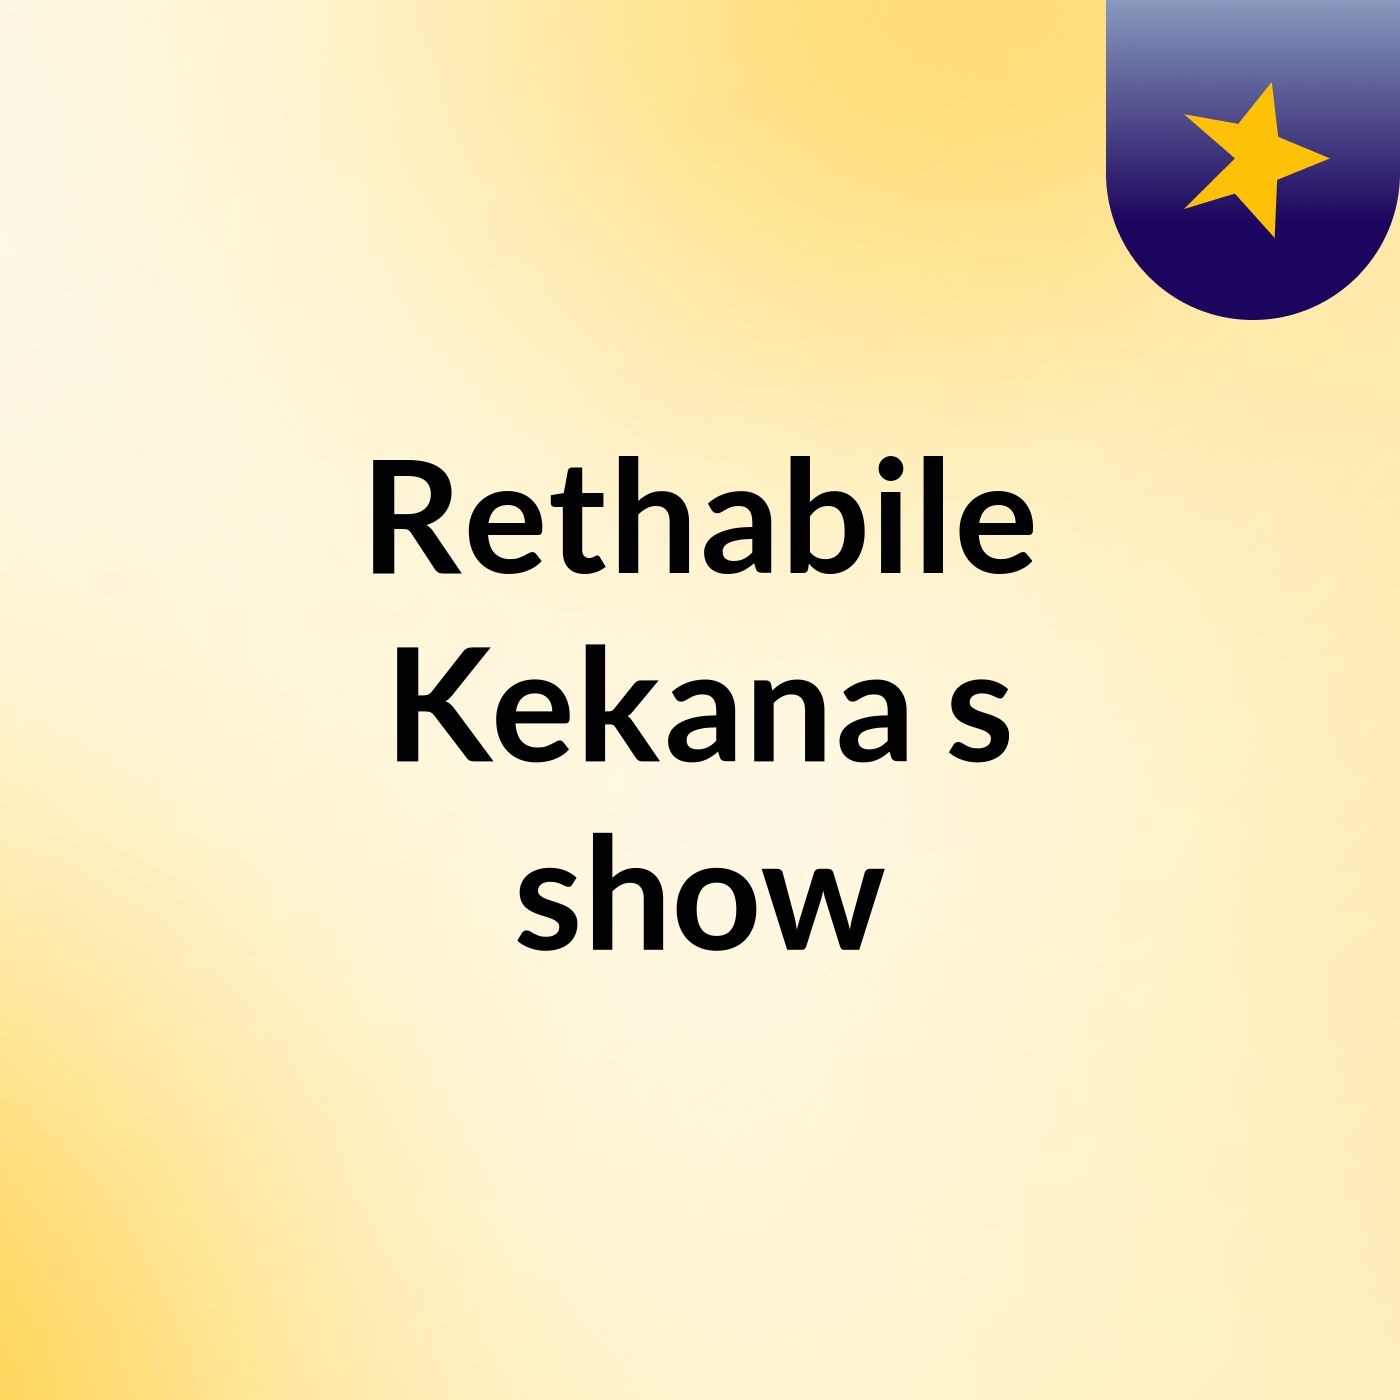 Rethabile Kekana's show